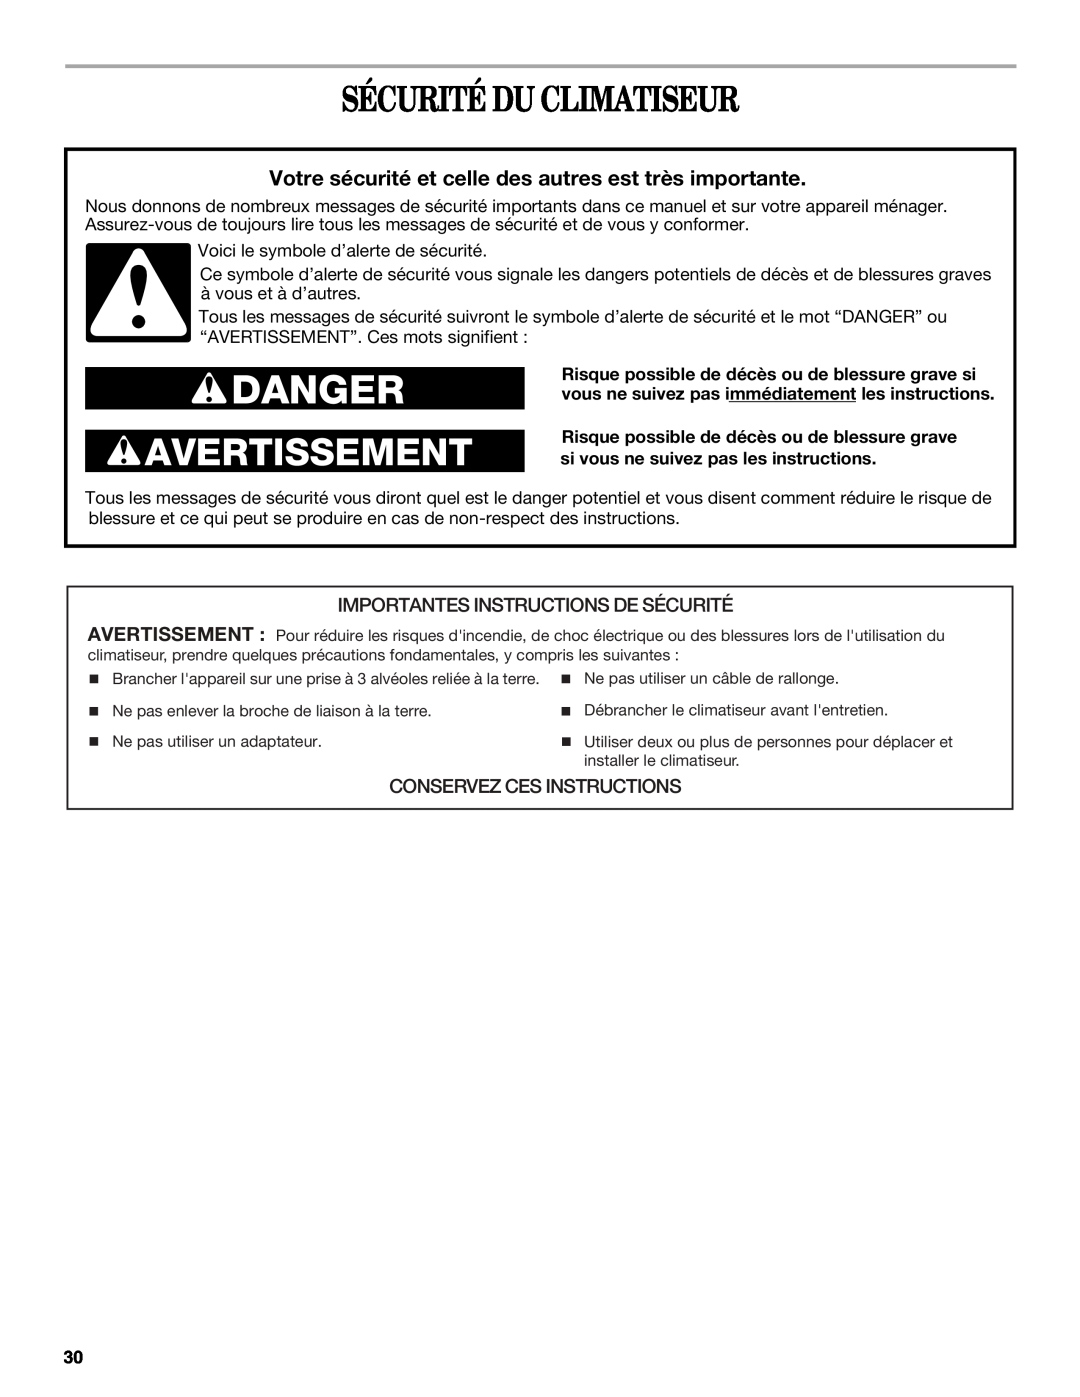 Whirlpool ACS088PR0 Sécurité Du Climatiseur, Importantes Instructions De Sécurité, Conservez Ces Instructions, Danger 